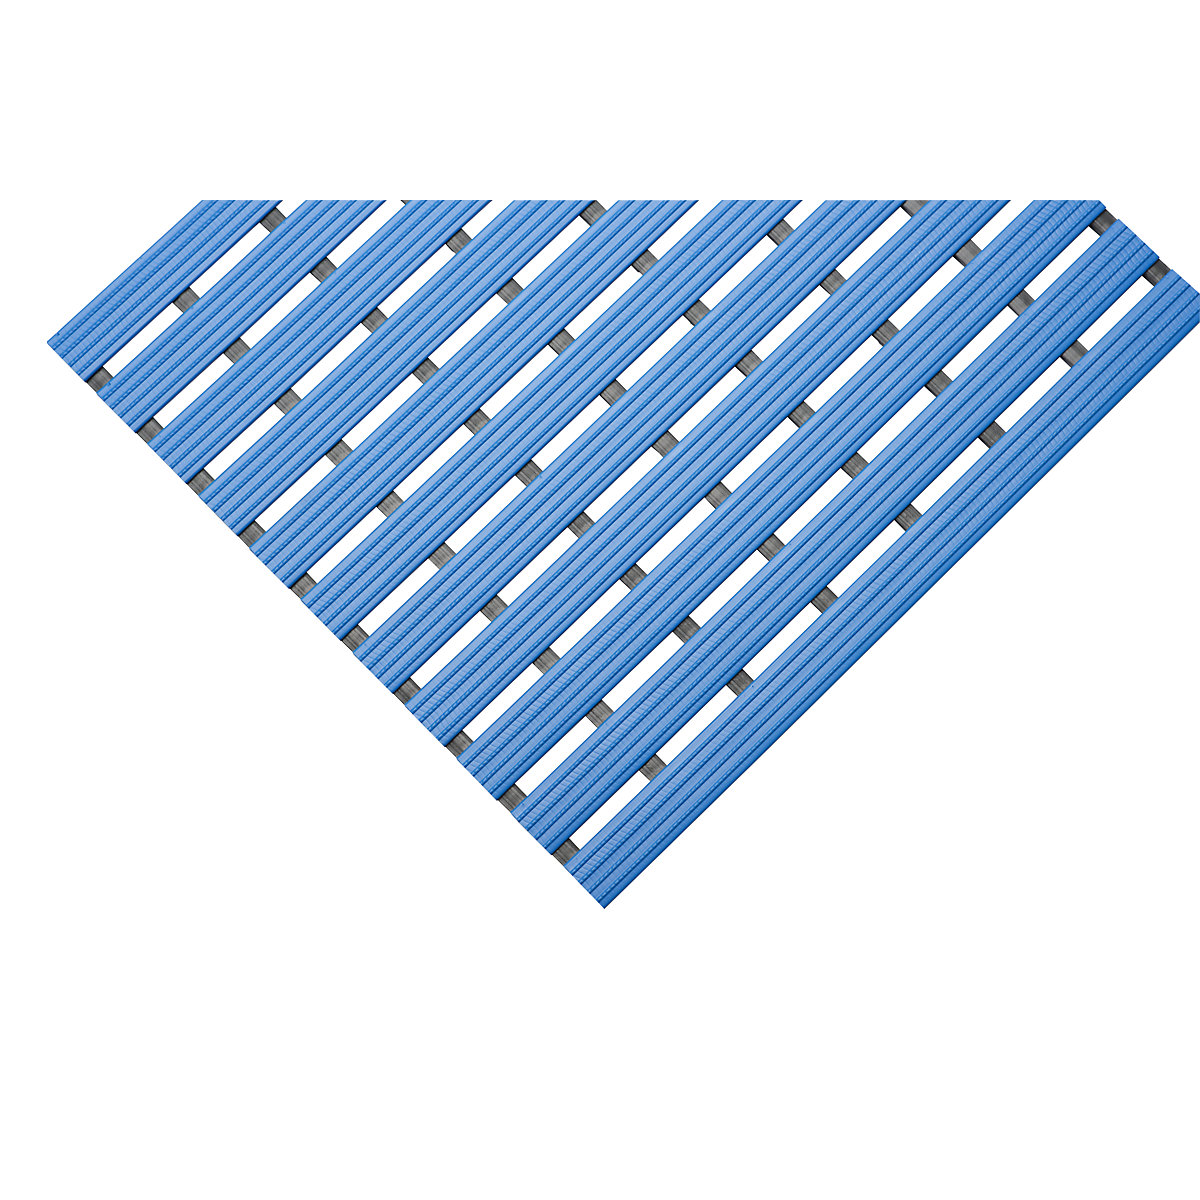 PVC-Profilmatte, pro lfd. m, Lauffläche aus Hart-PVC, rutschsicher, Breite 600 mm, blau-10